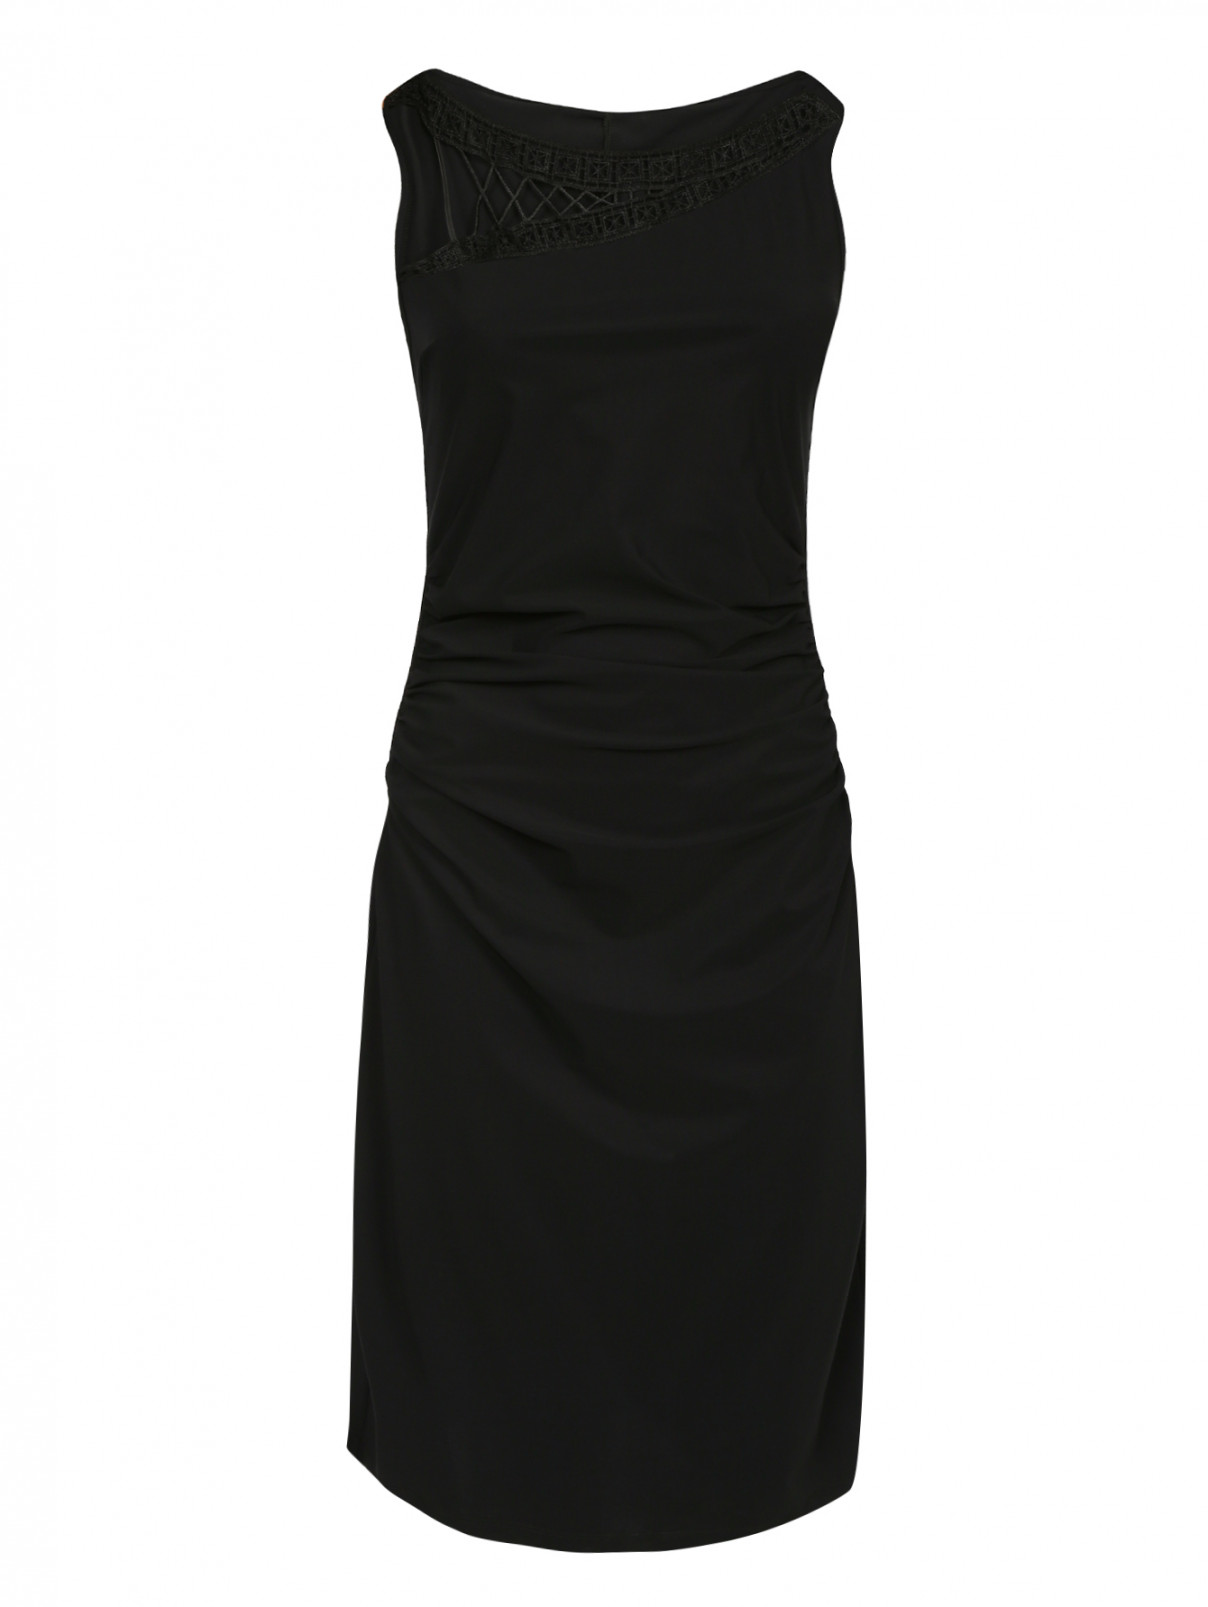 Платье с драпировкой с кружевной вставкой Parah  –  Общий вид  – Цвет:  Черный